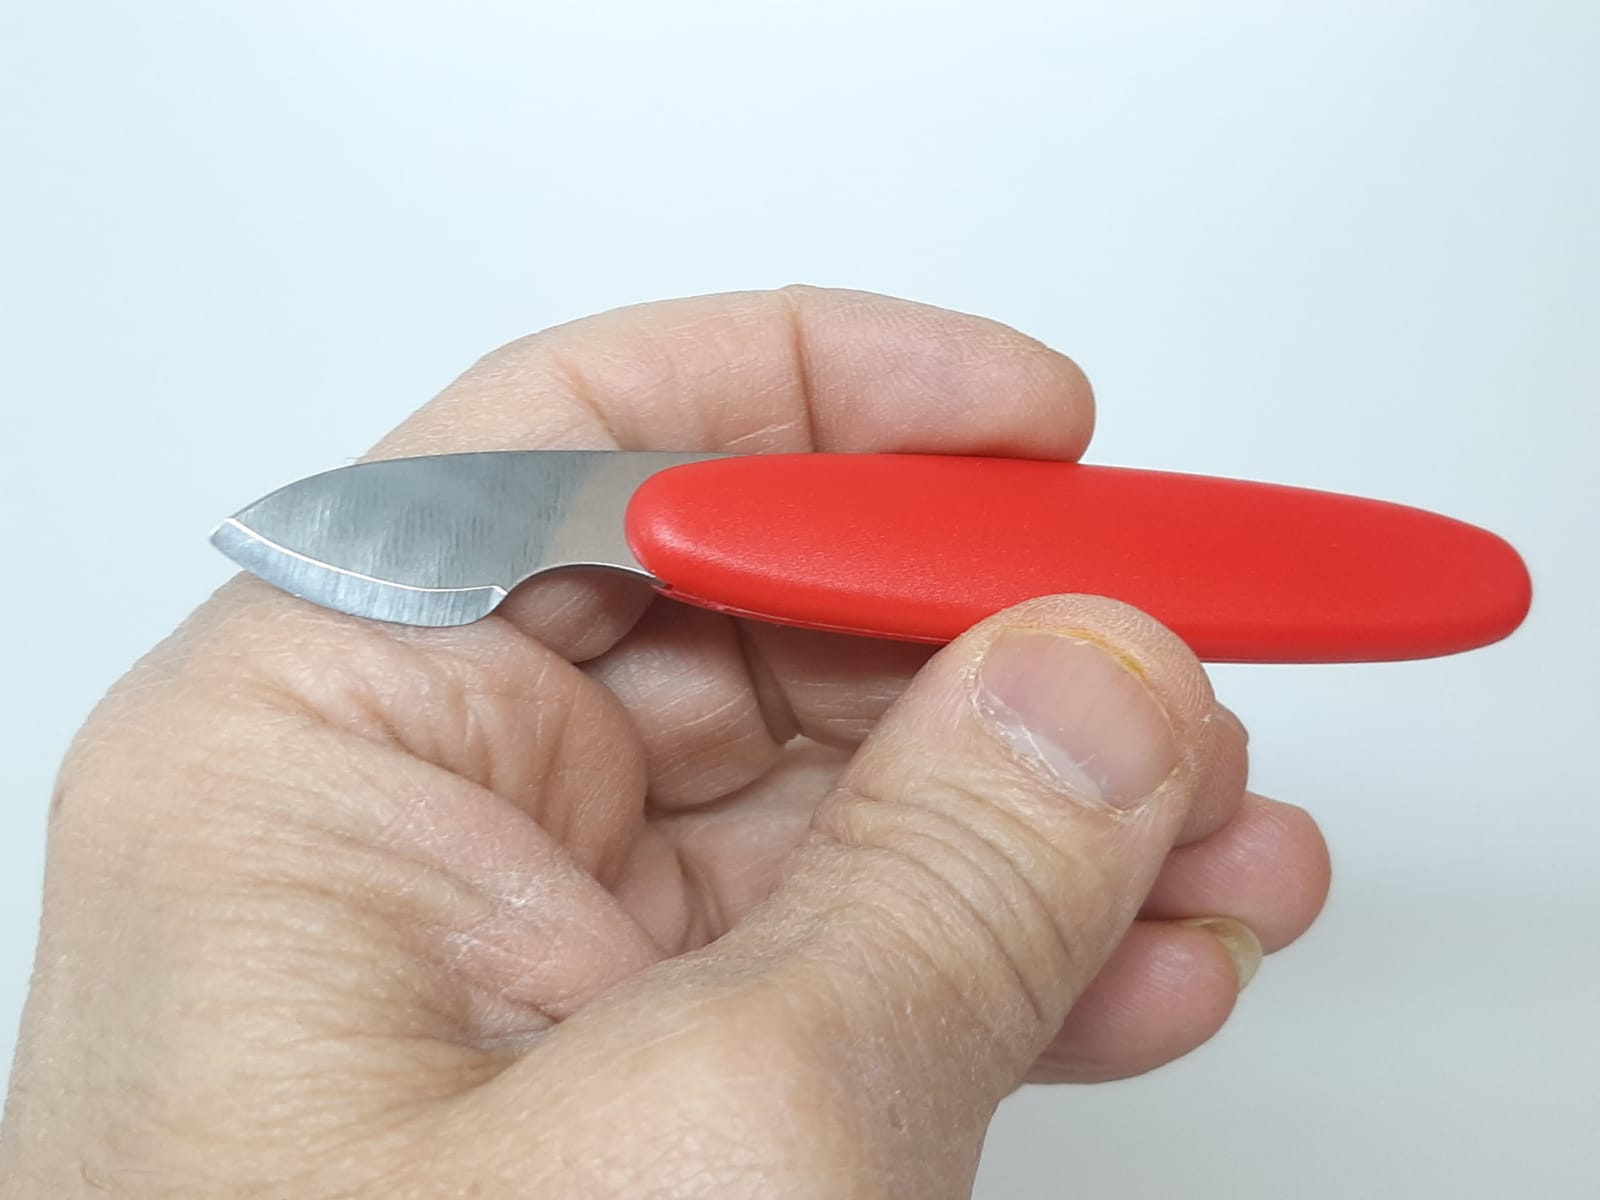 Skruvstäd + Boettöppnare Kniv (Klocka/urmakeri verktyg)